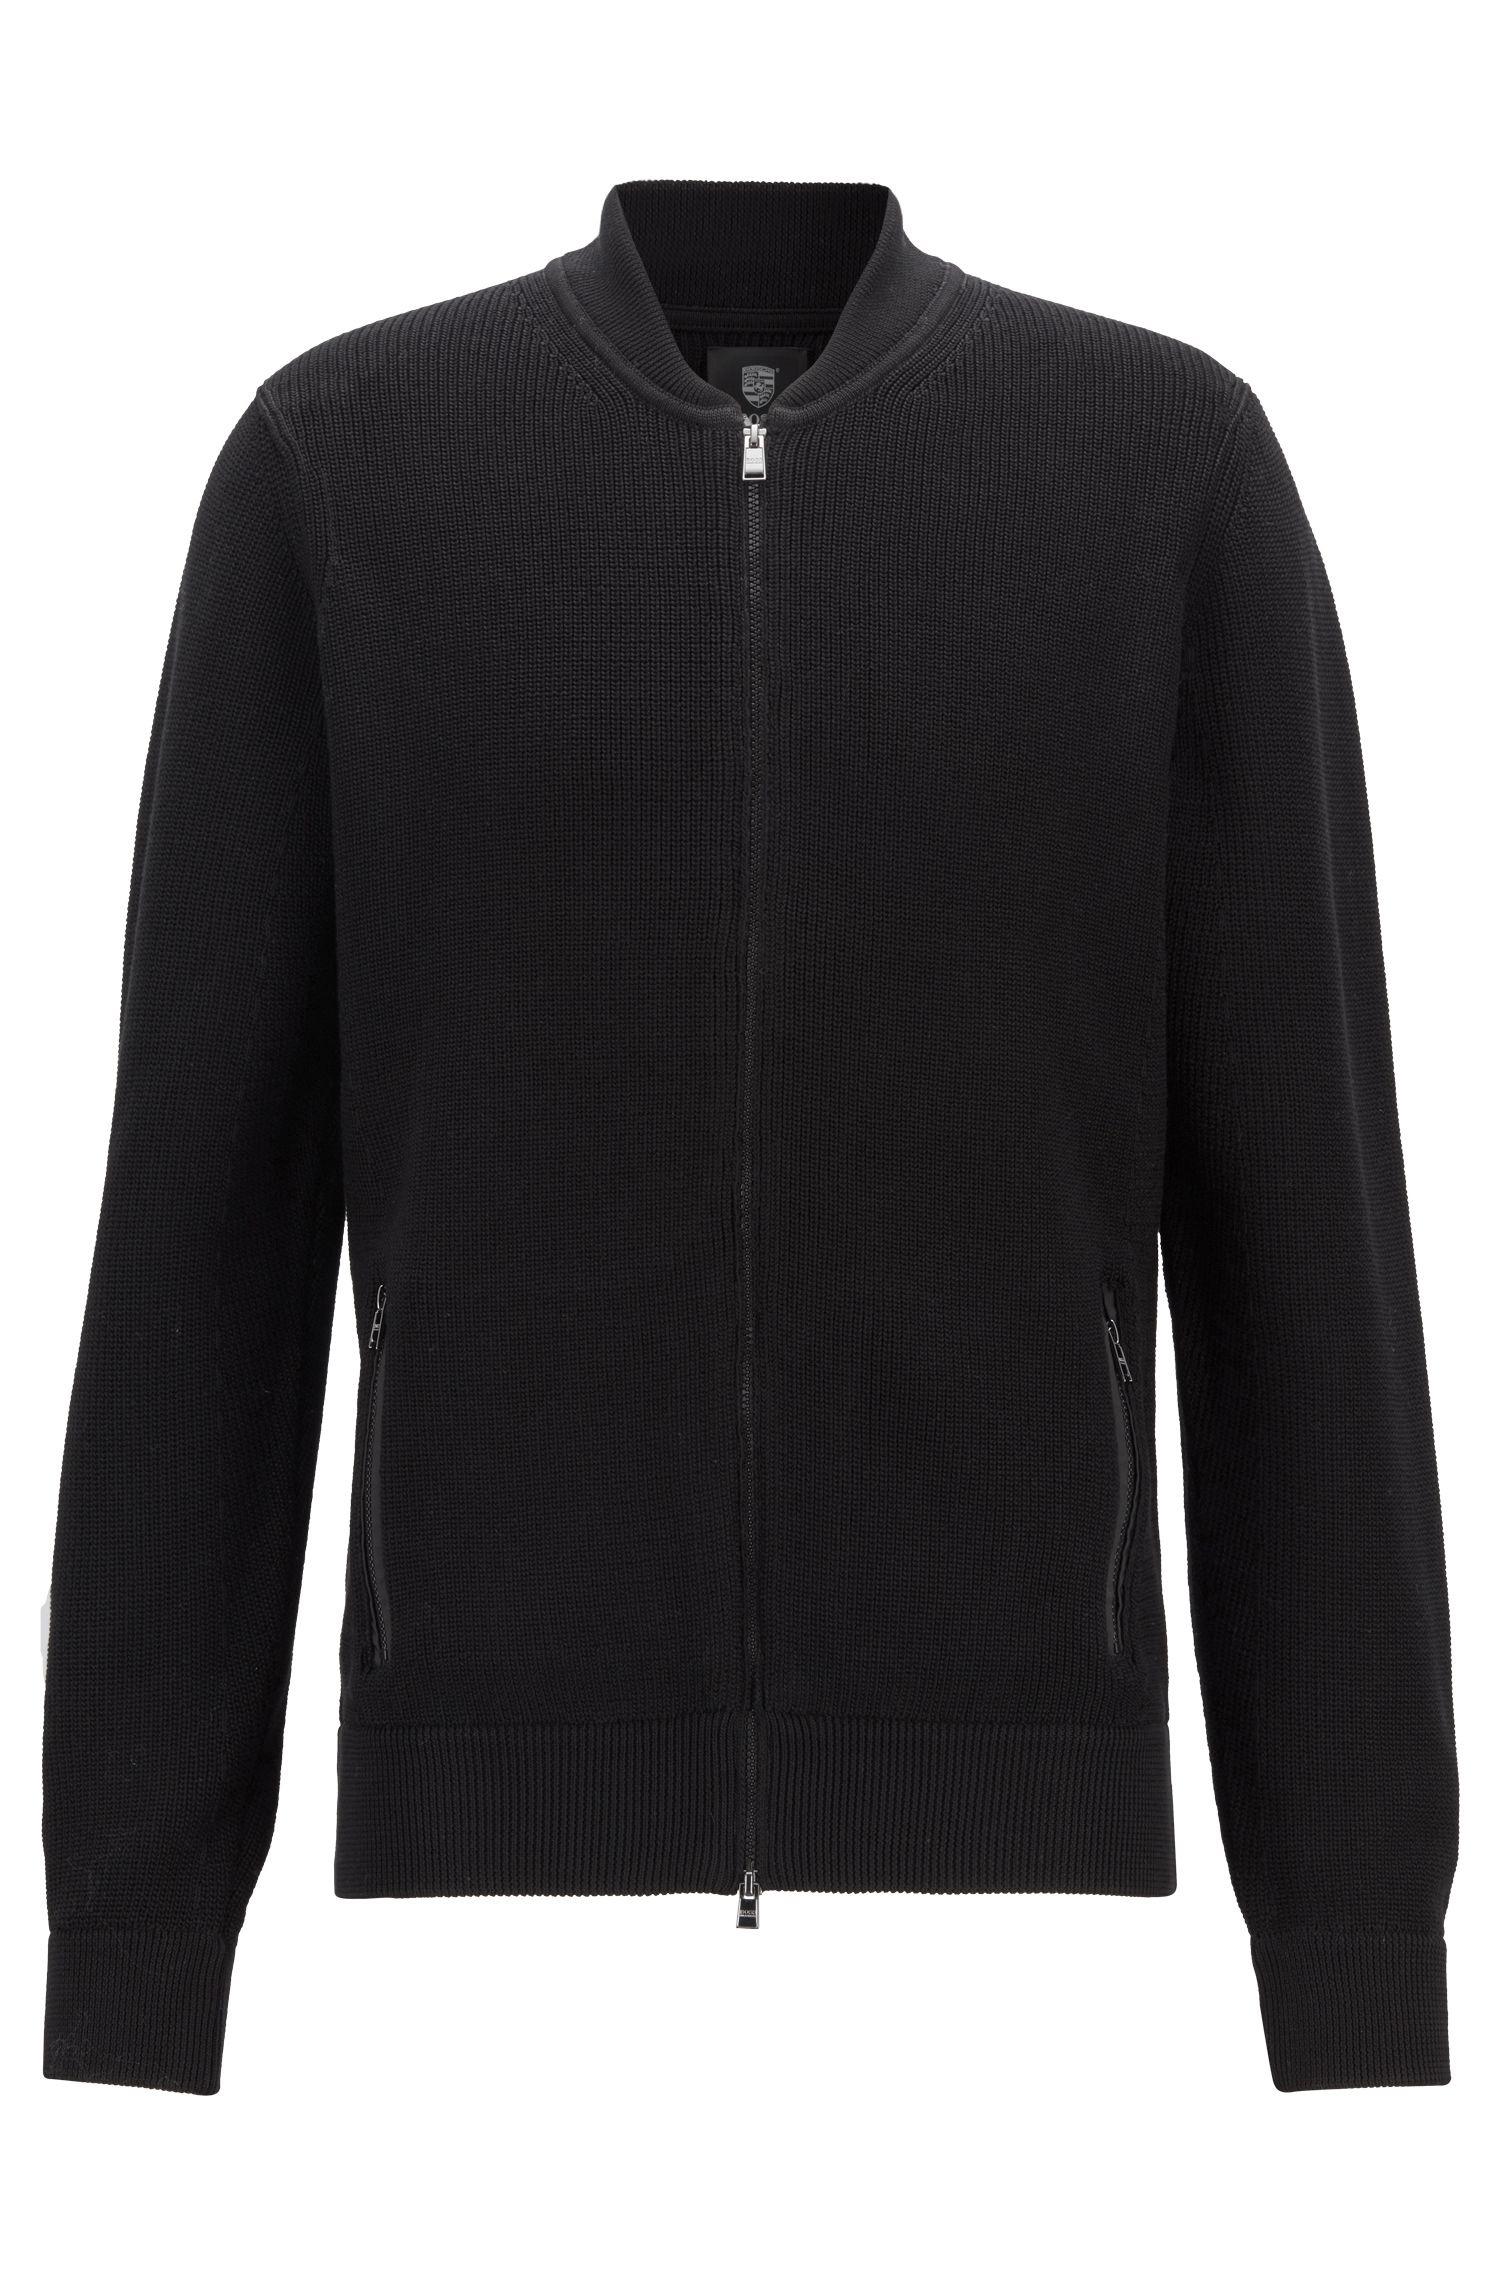 BOSS Knitted Jacket In Mercerized Cotton in Black for Men - Lyst